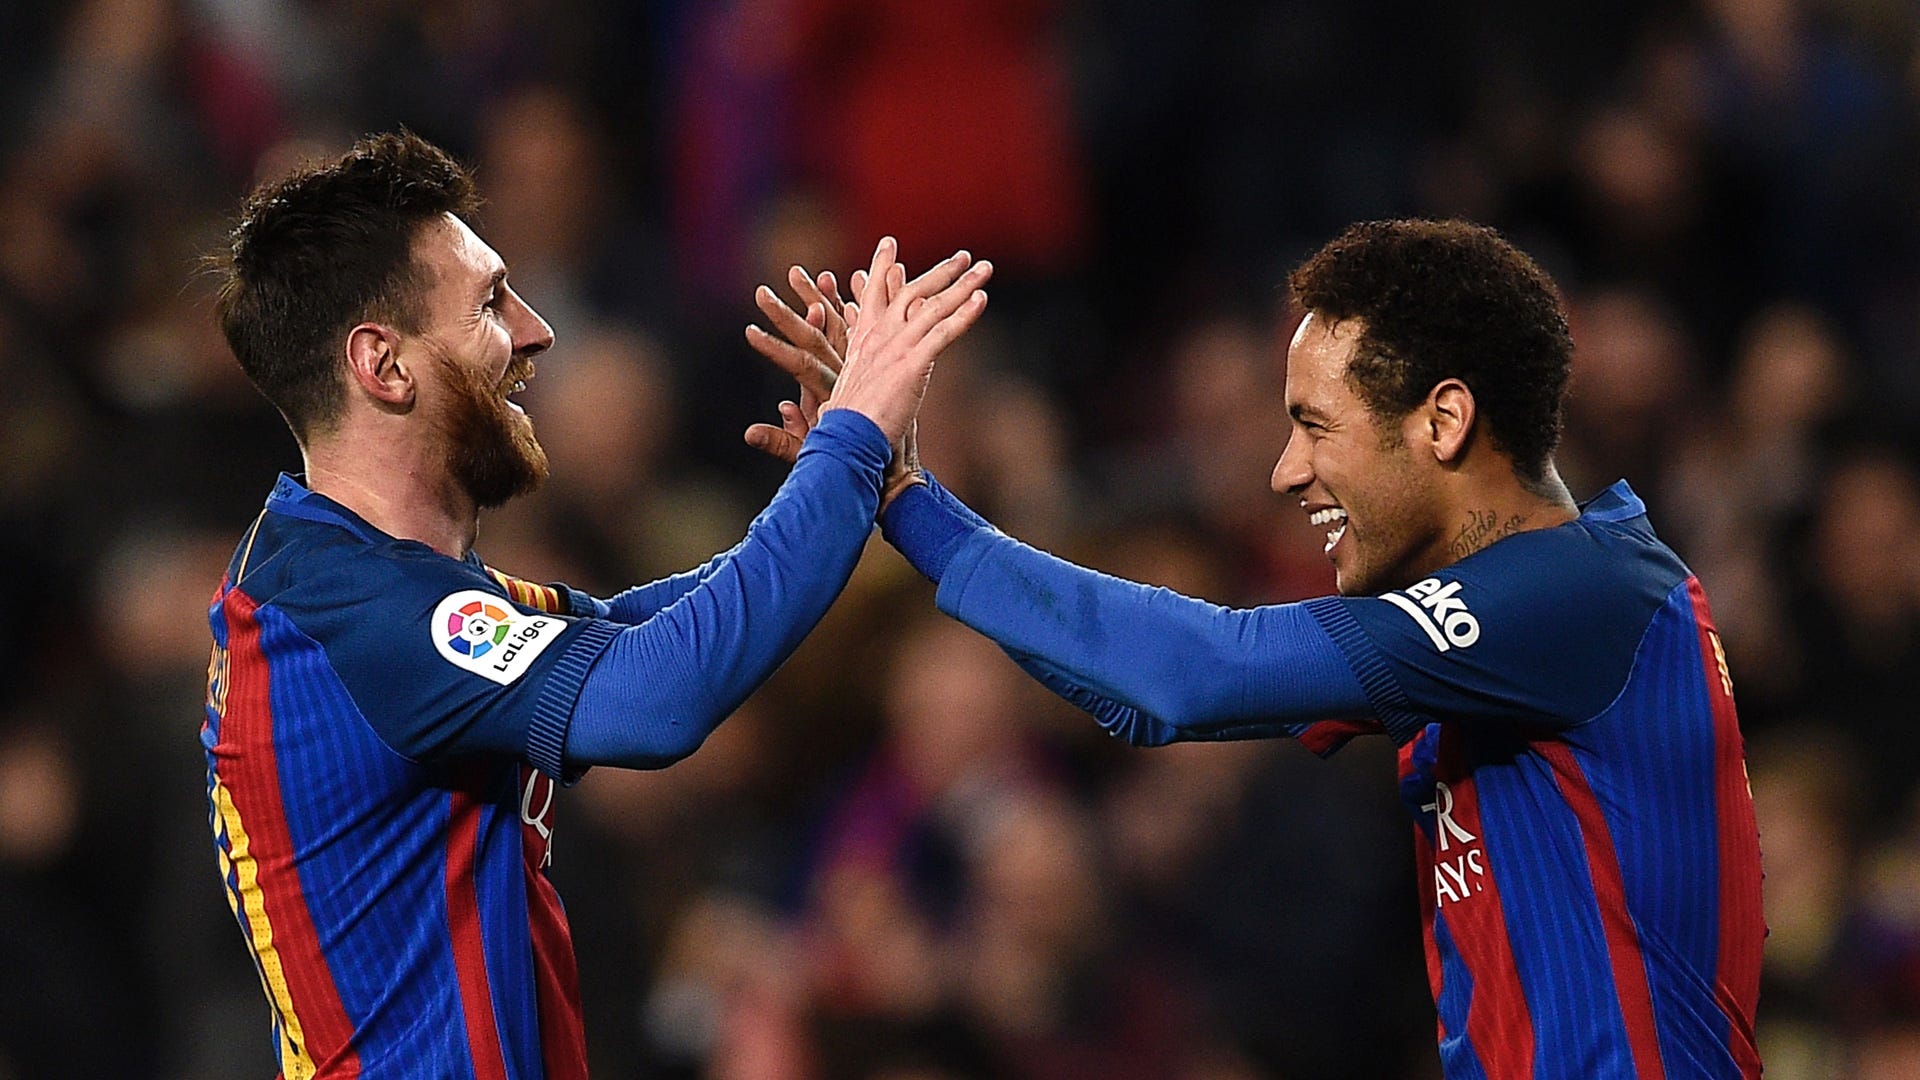 Messi và Neymar là hai ngôi sao của bóng đá thế giới. Xem hình ảnh chia tay của Messi với Neymar để thấy tình bạn và sự đoàn kết của hai ngôi sao này trong trận đấu và ngoài đời.